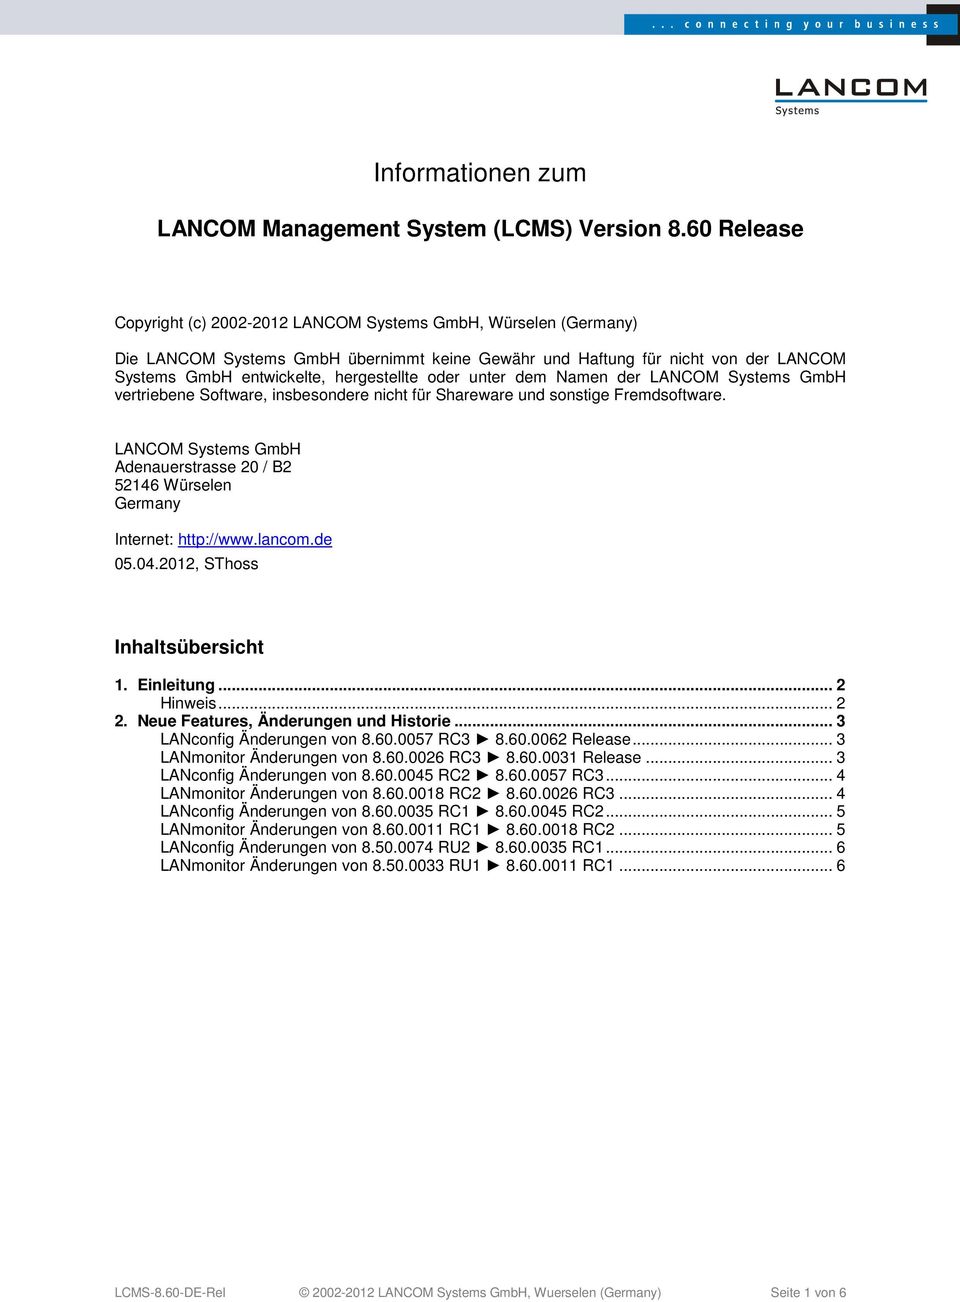 oder unter dem Namen der LANCOM Systems GmbH vertriebene Software, insbesondere nicht für Shareware und sonstige Fremdsoftware.